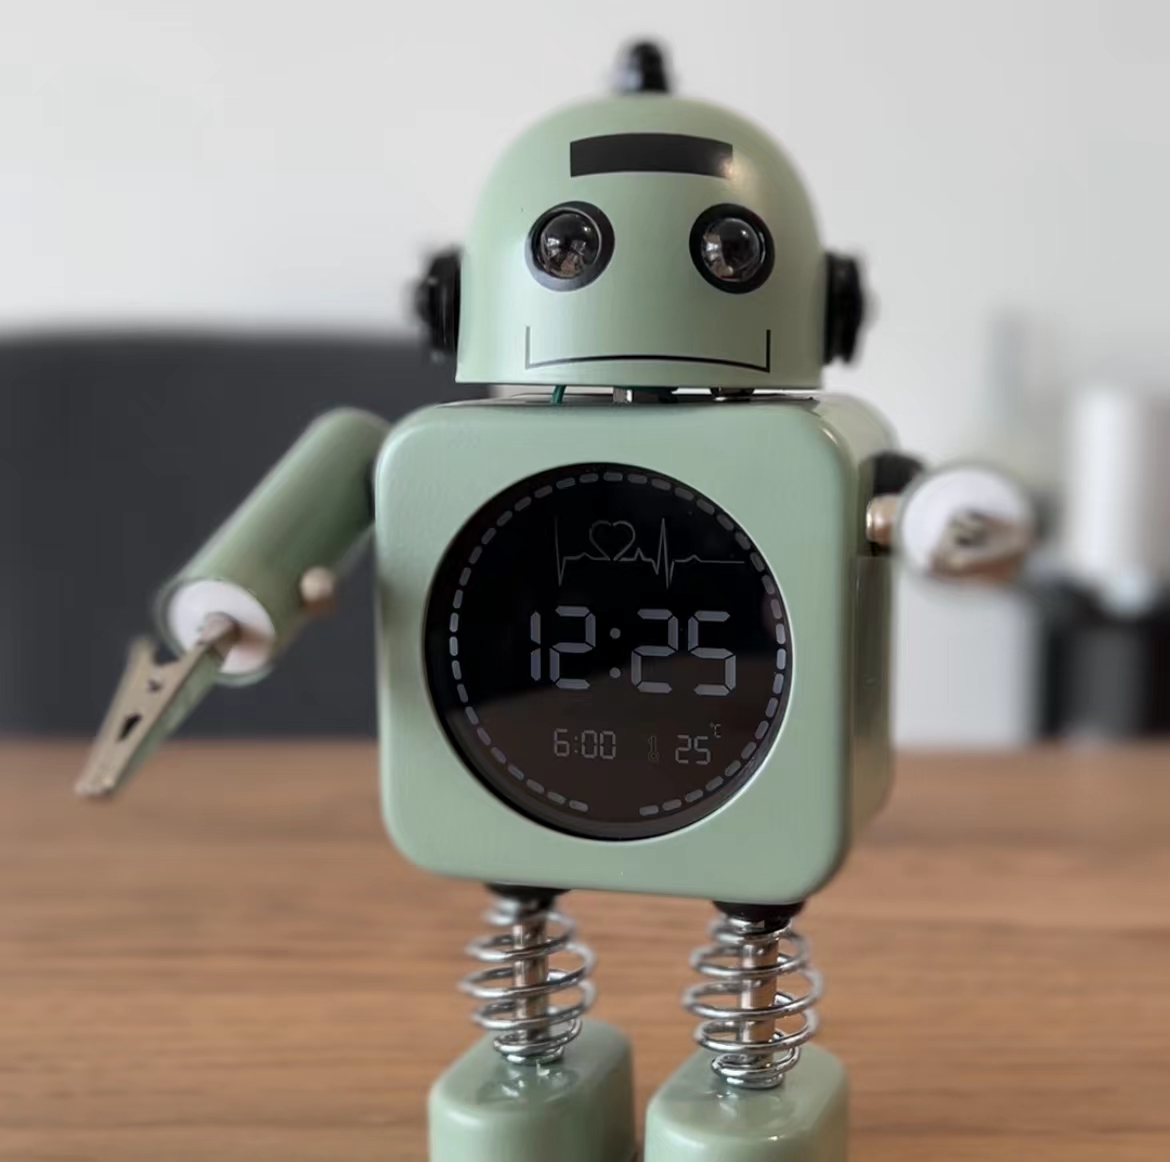 【送料無料】置き時計 目覚まし時計 かわいい デジタル時計 ロボット 置き物 ロボット時計 ユニーク 置時計 静音 お祝い 子供が喜ぶ  プレゼント 5色が選べる メモクリップ グッドプロダクツプラザ